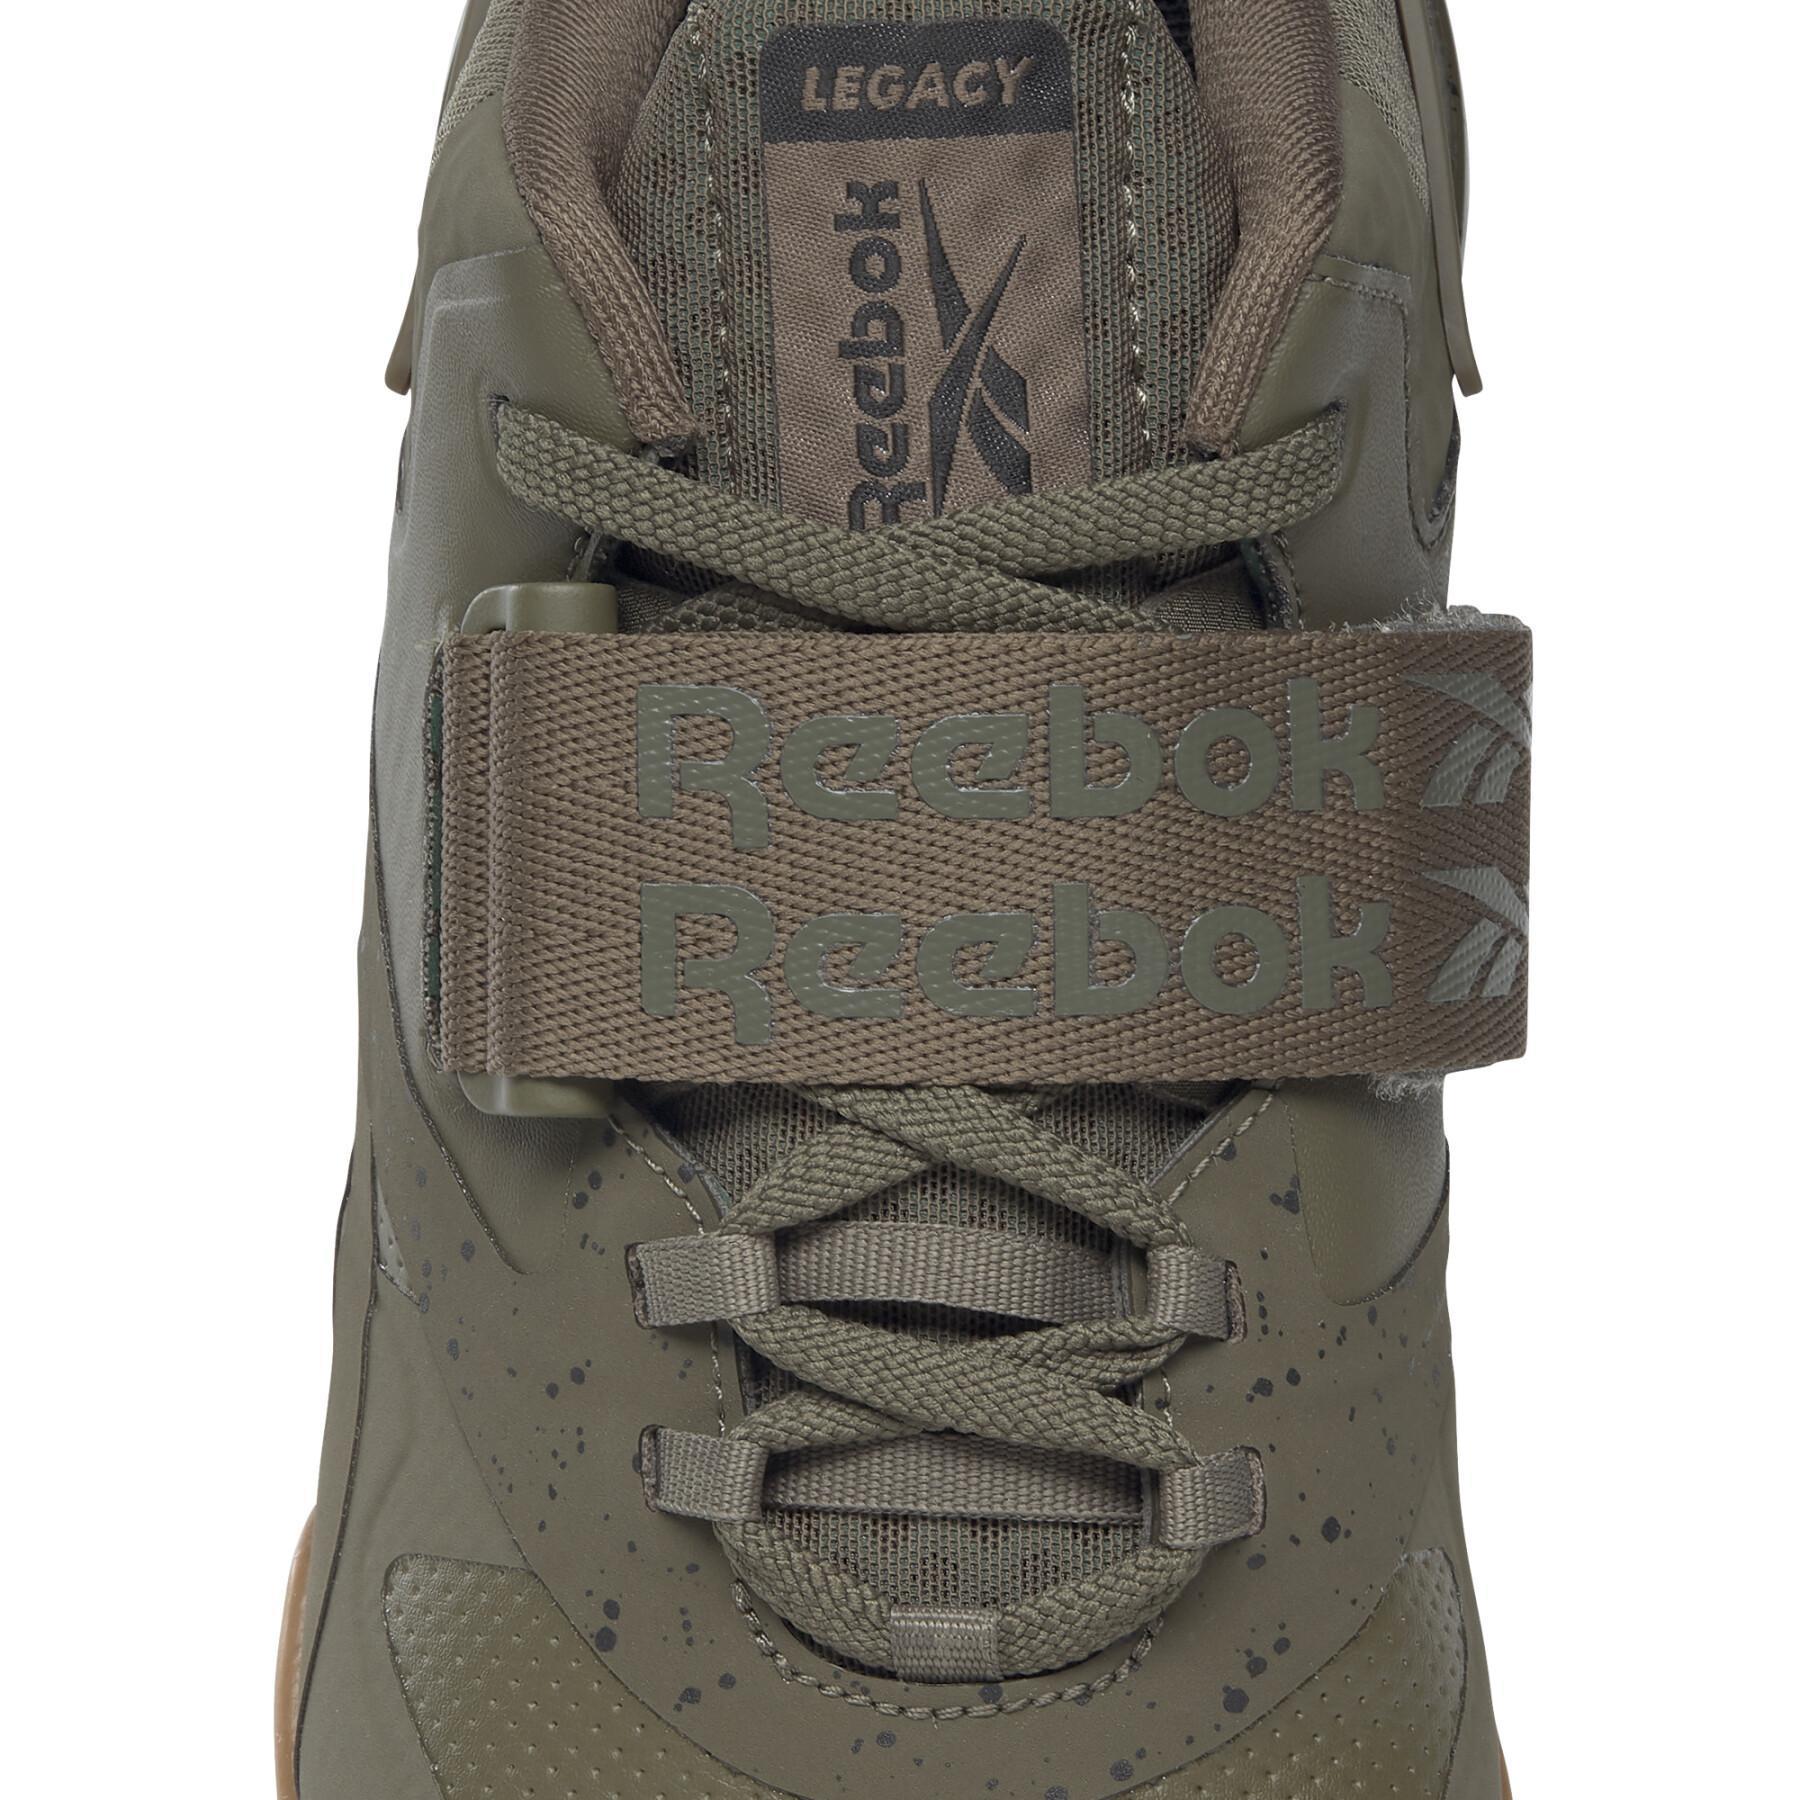 Schuhe Reebok Legacy Lifter Ii